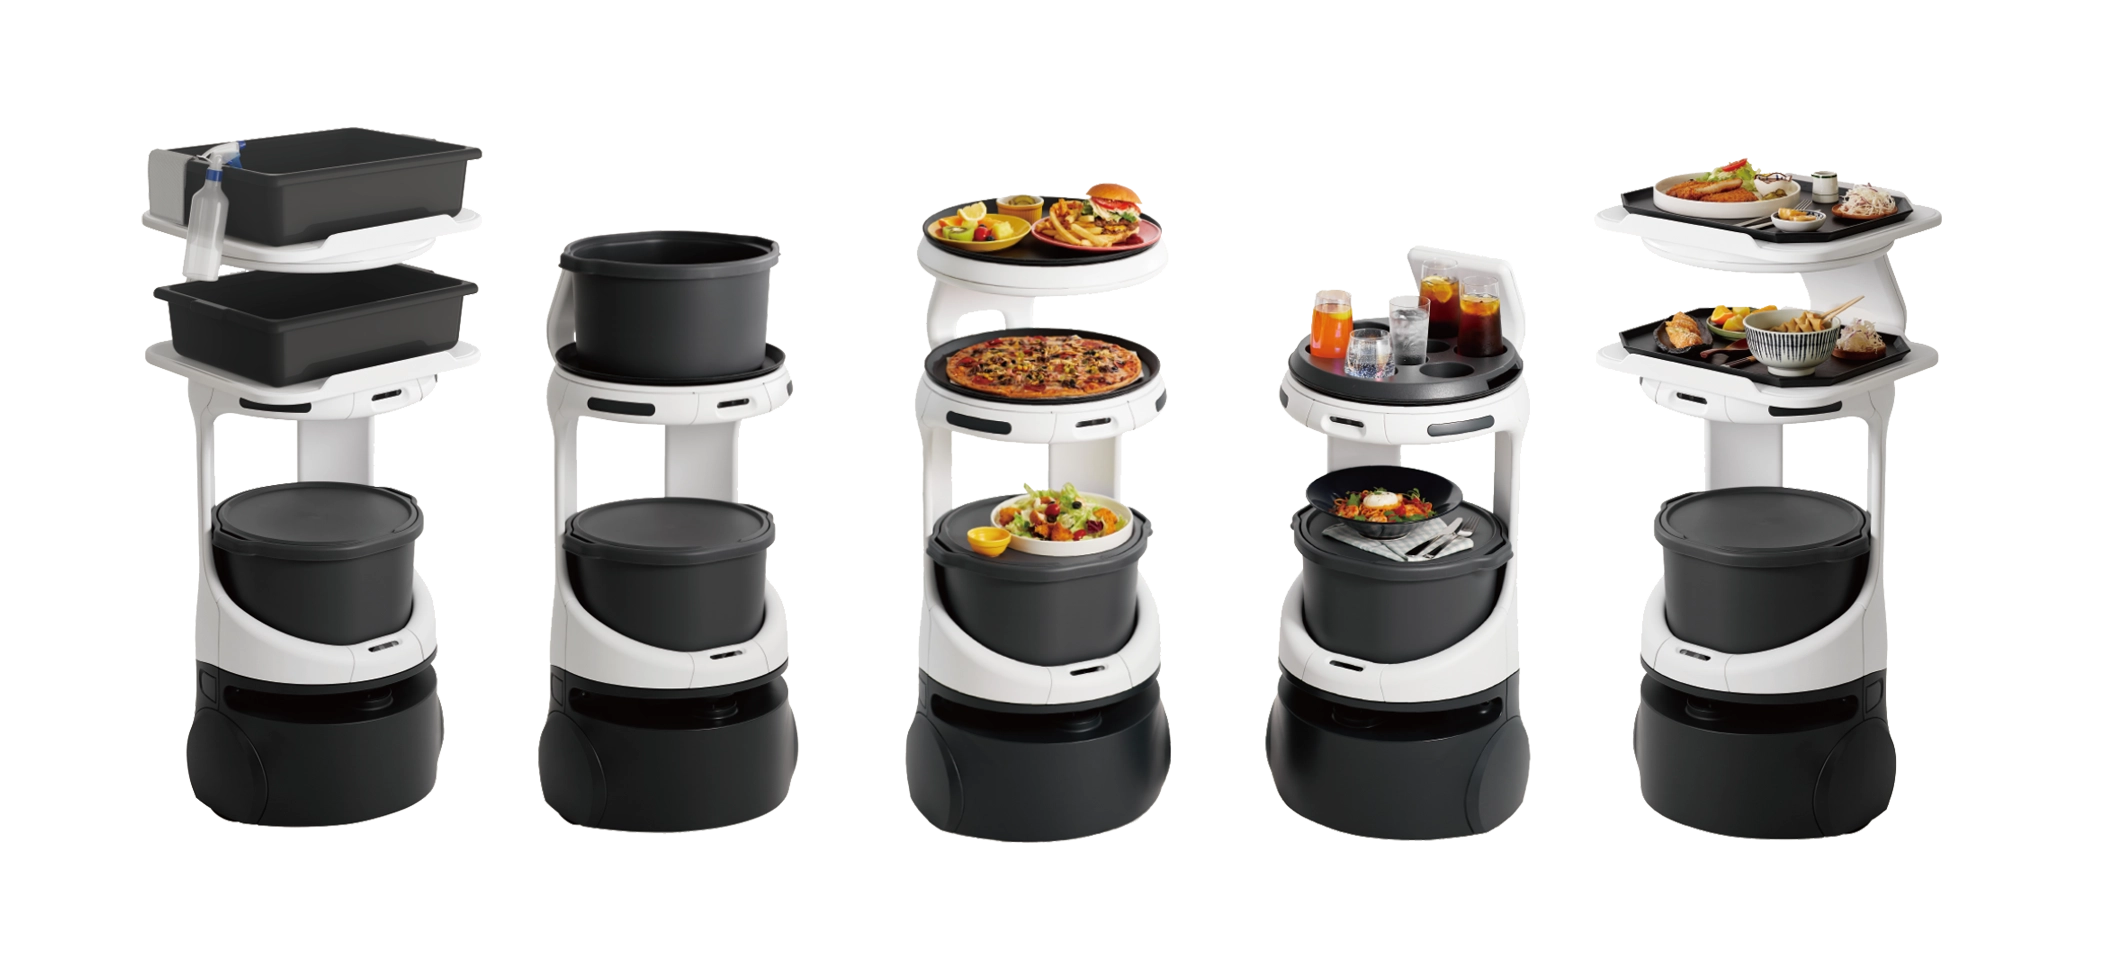 images/servi-models-trans2.webp - SERVI and SERVI MINI food service robot models from MetaDolce Technology